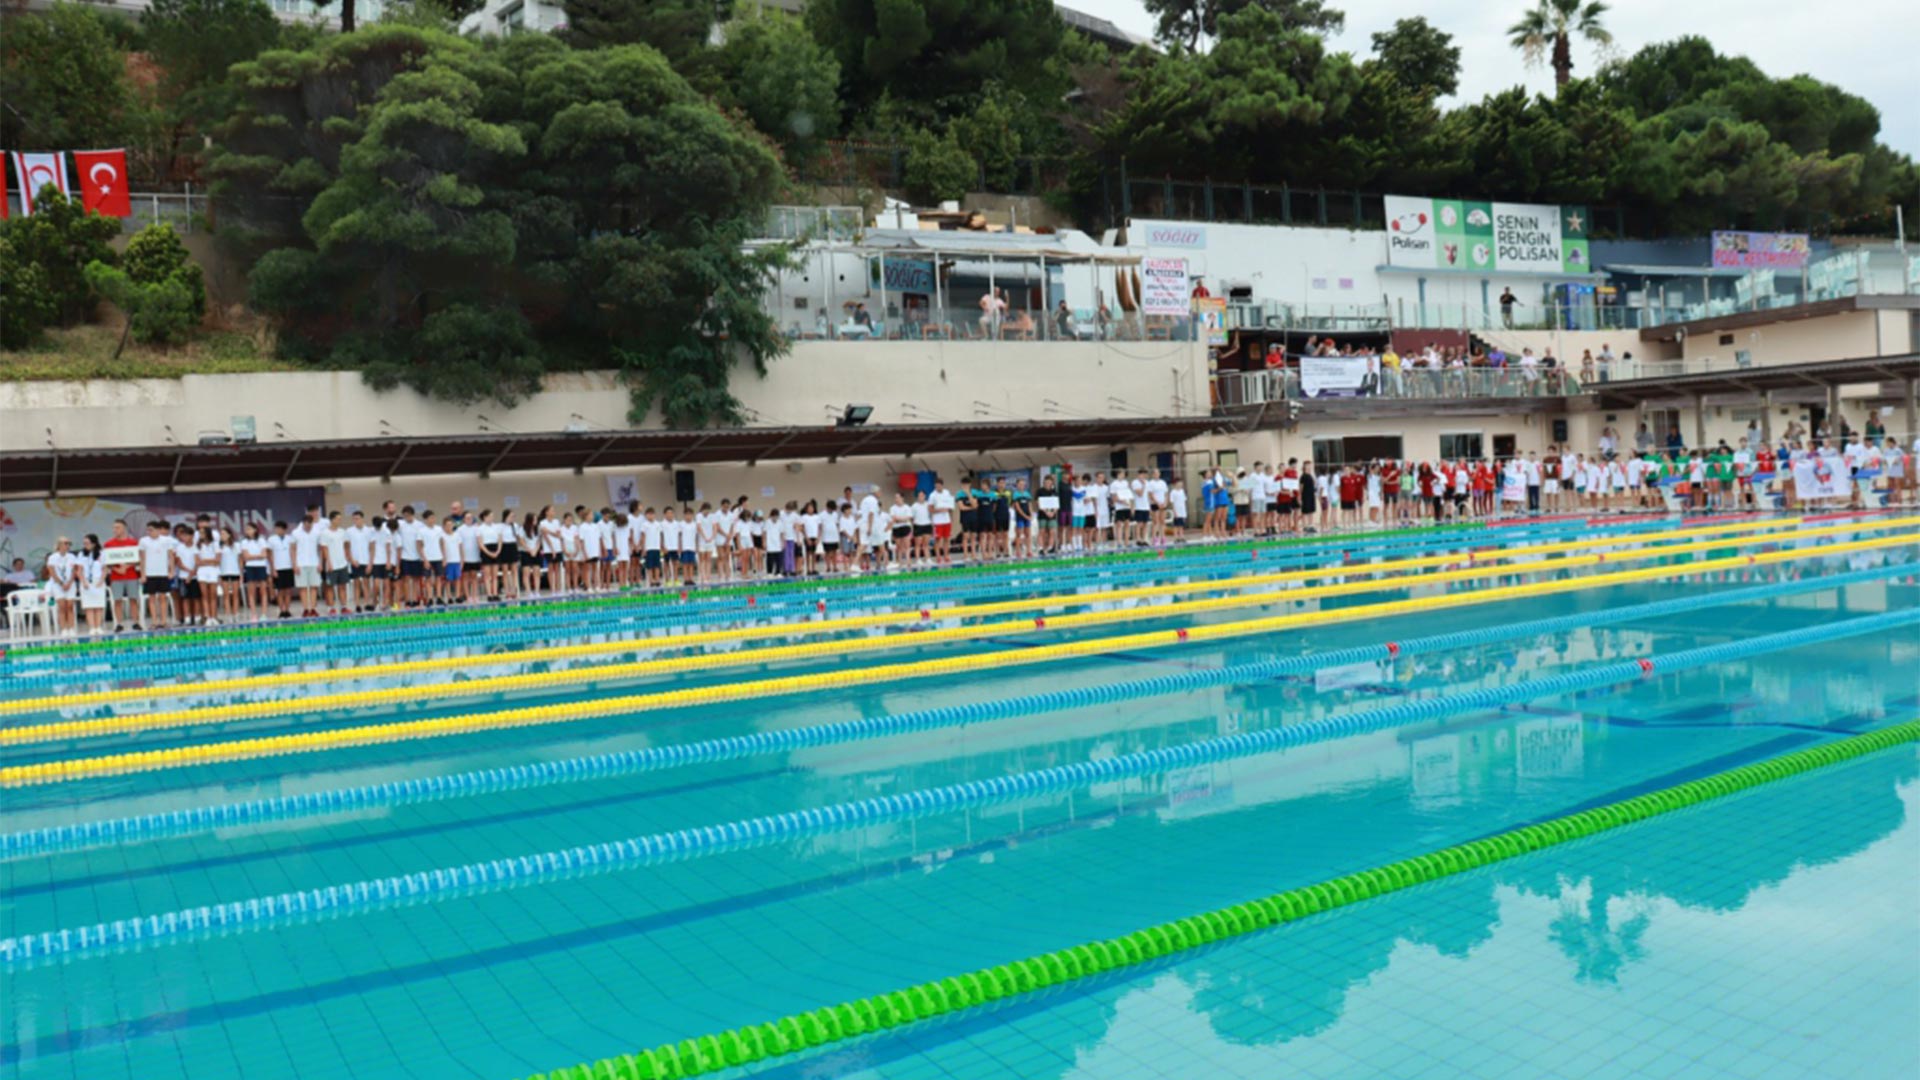 36″ıncı Uluslararası Prens Adaları Yüzme Şampiyonası Başladı